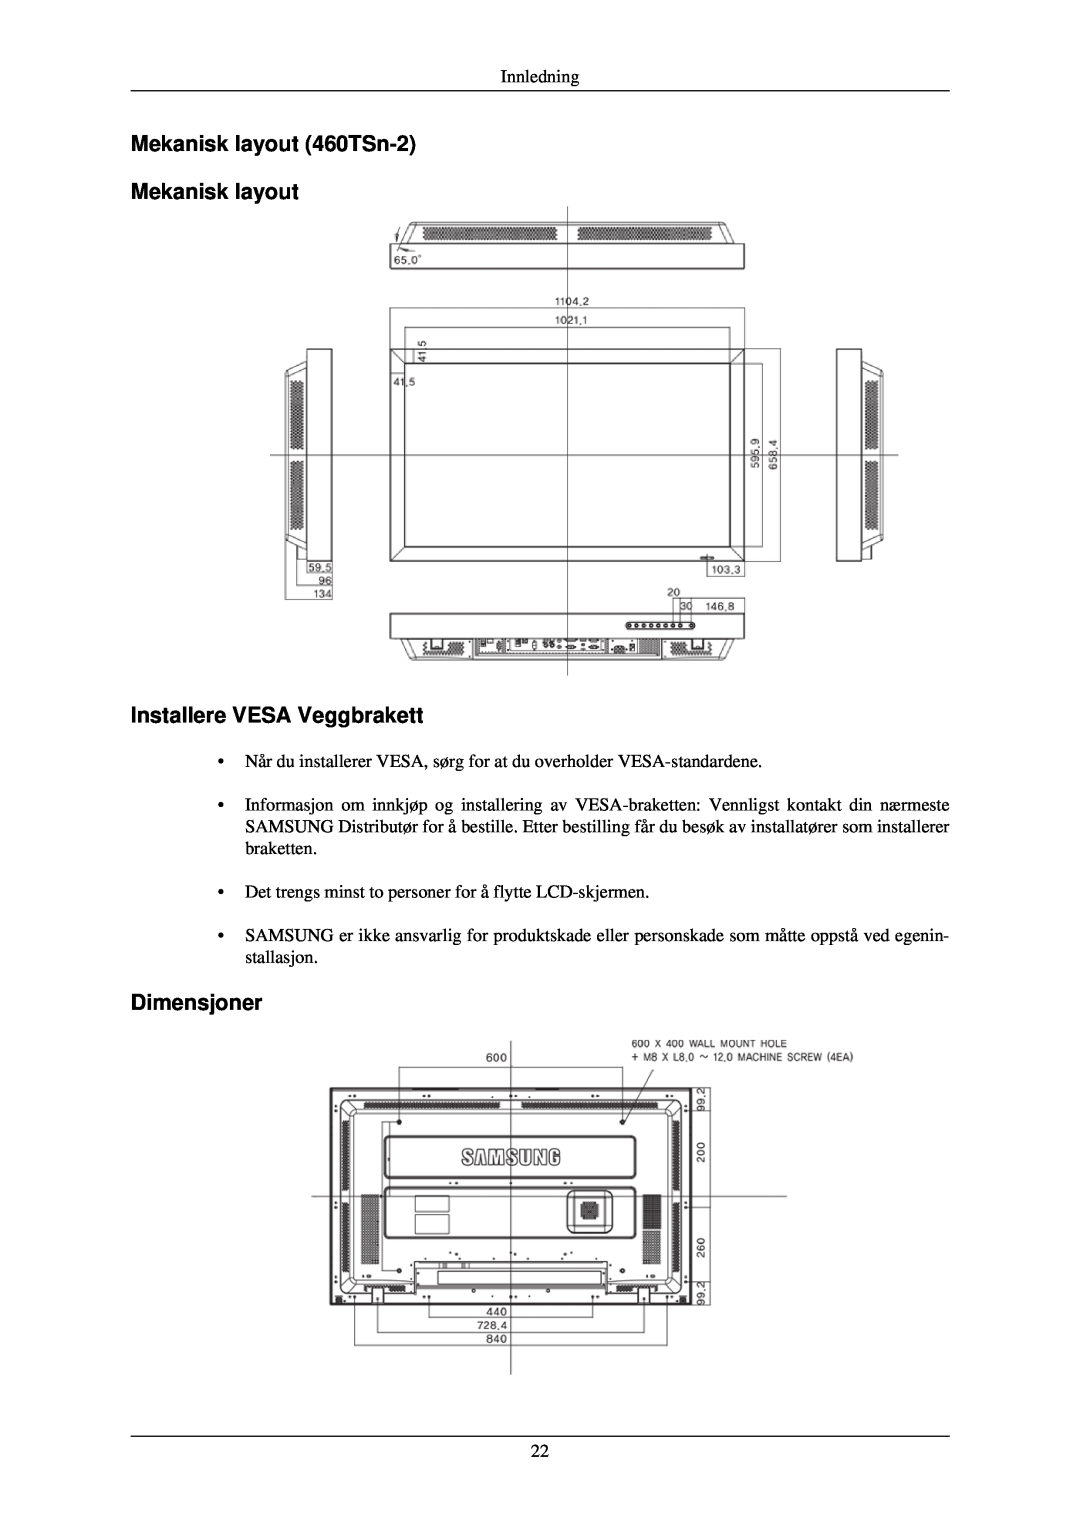 Samsung LH46TCUMBG/EN, LH40TCUMBG/EN Mekanisk layout 460TSn-2 Mekanisk layout Installere VESA Veggbrakett, Dimensjoner 